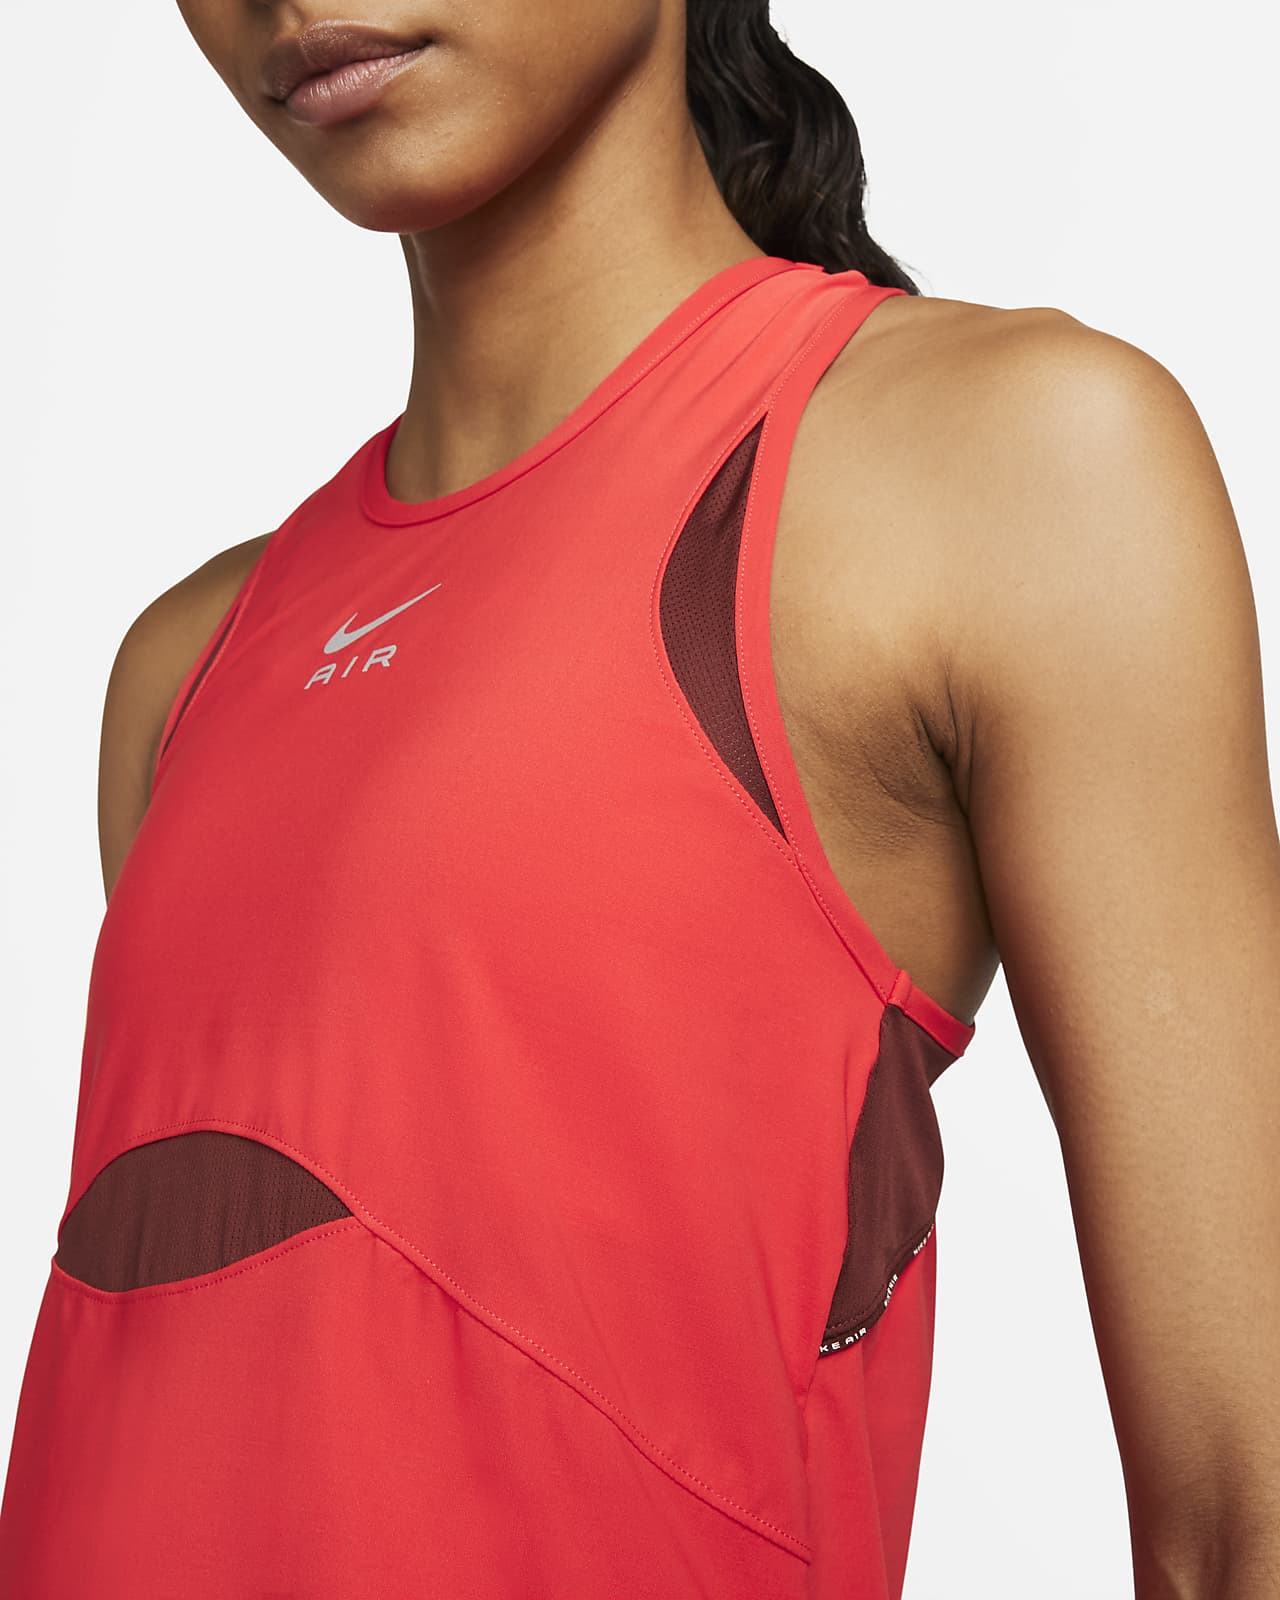 Zich afvragen Tomaat gevolgtrekking Nike Air Dri-FIT Women's Running Tank. Nike.com